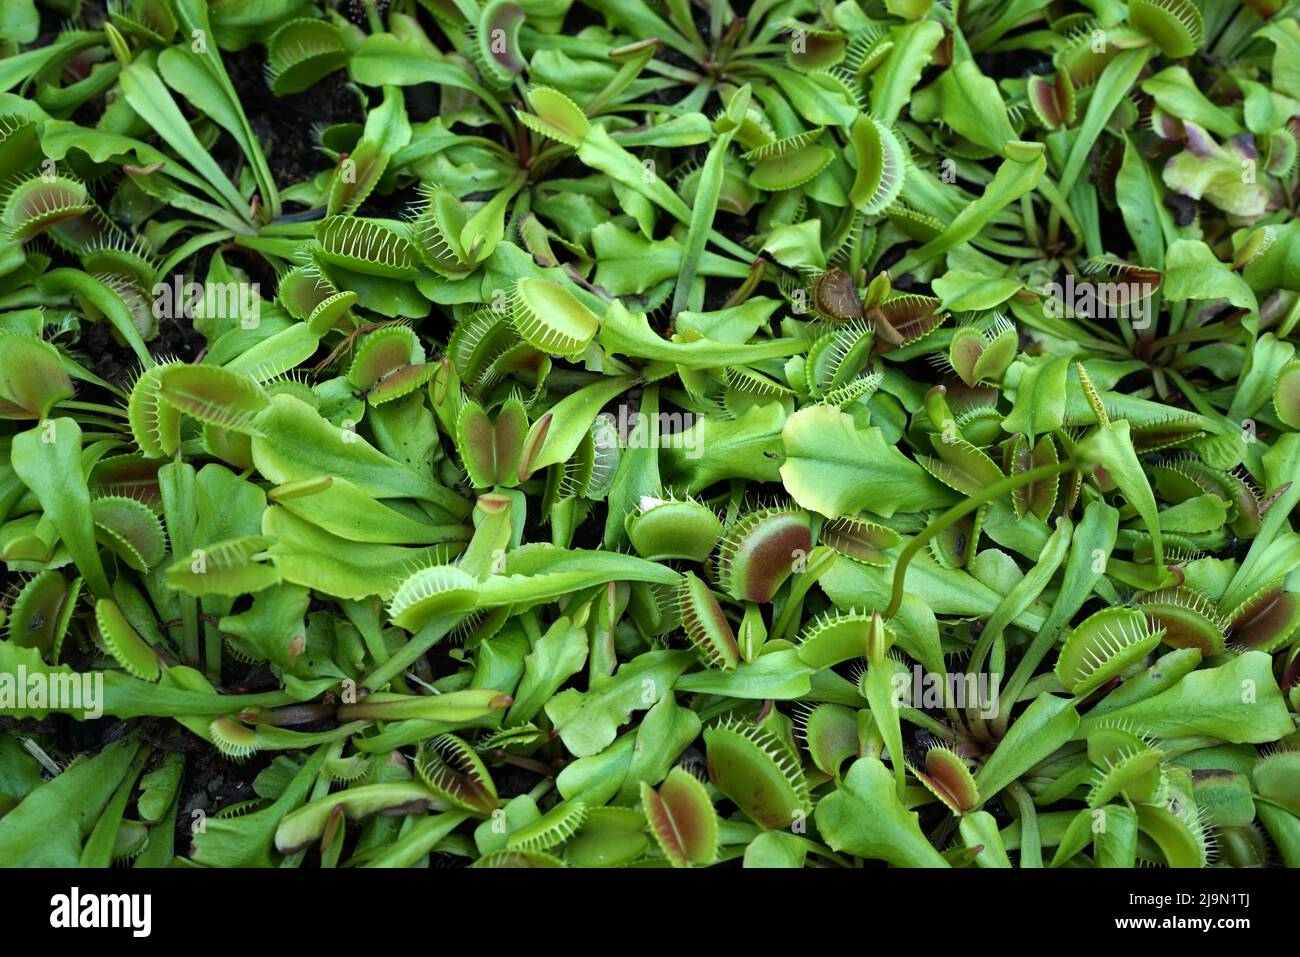 Il flytrap di Venus o Dionaea muscipula è una pianta carnivora originaria delle zone umide subtropicali sulla costa orientale degli Stati Uniti. Cattura la sua preda con una t Foto Stock